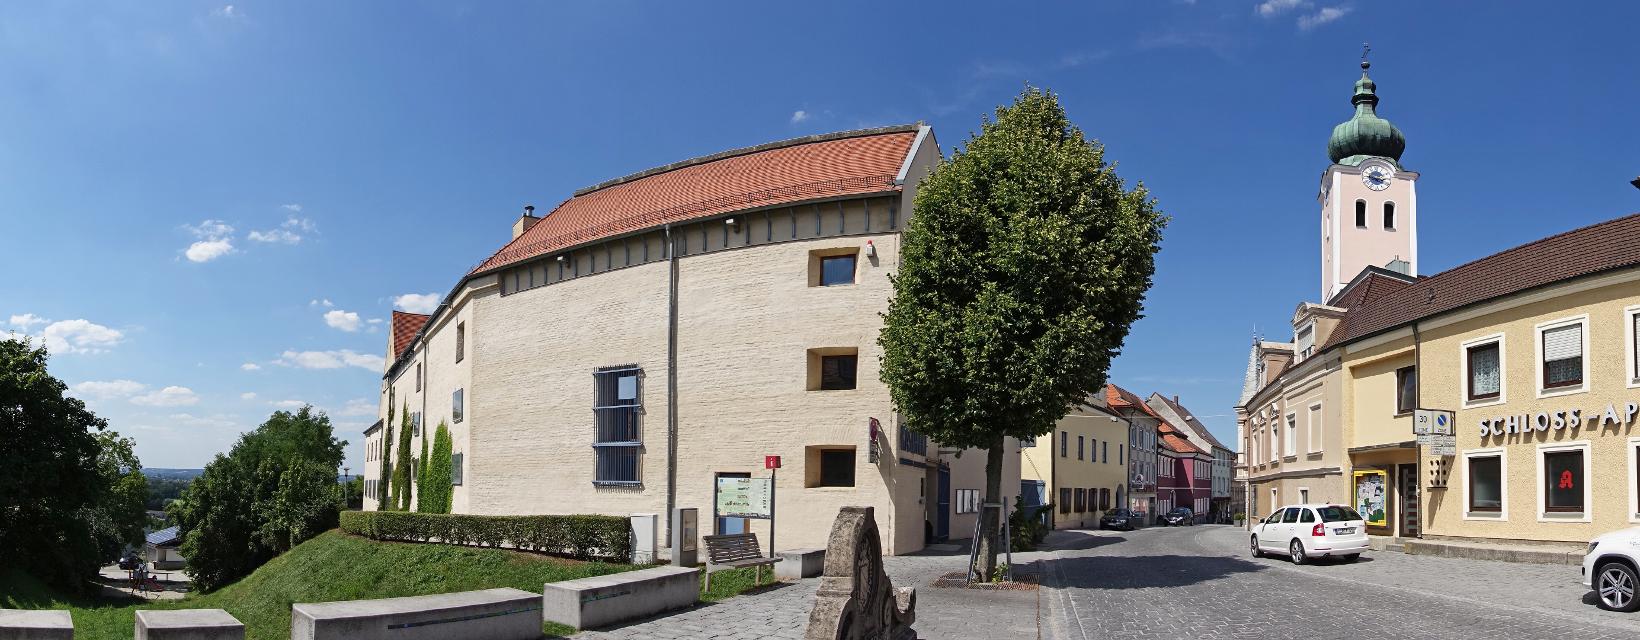 Der Förderkreis Niederbayerisches Archäologiemuseum e.V. lädt wieder zu spannenden Freitagsvorträgen in den Kastenhof ein!